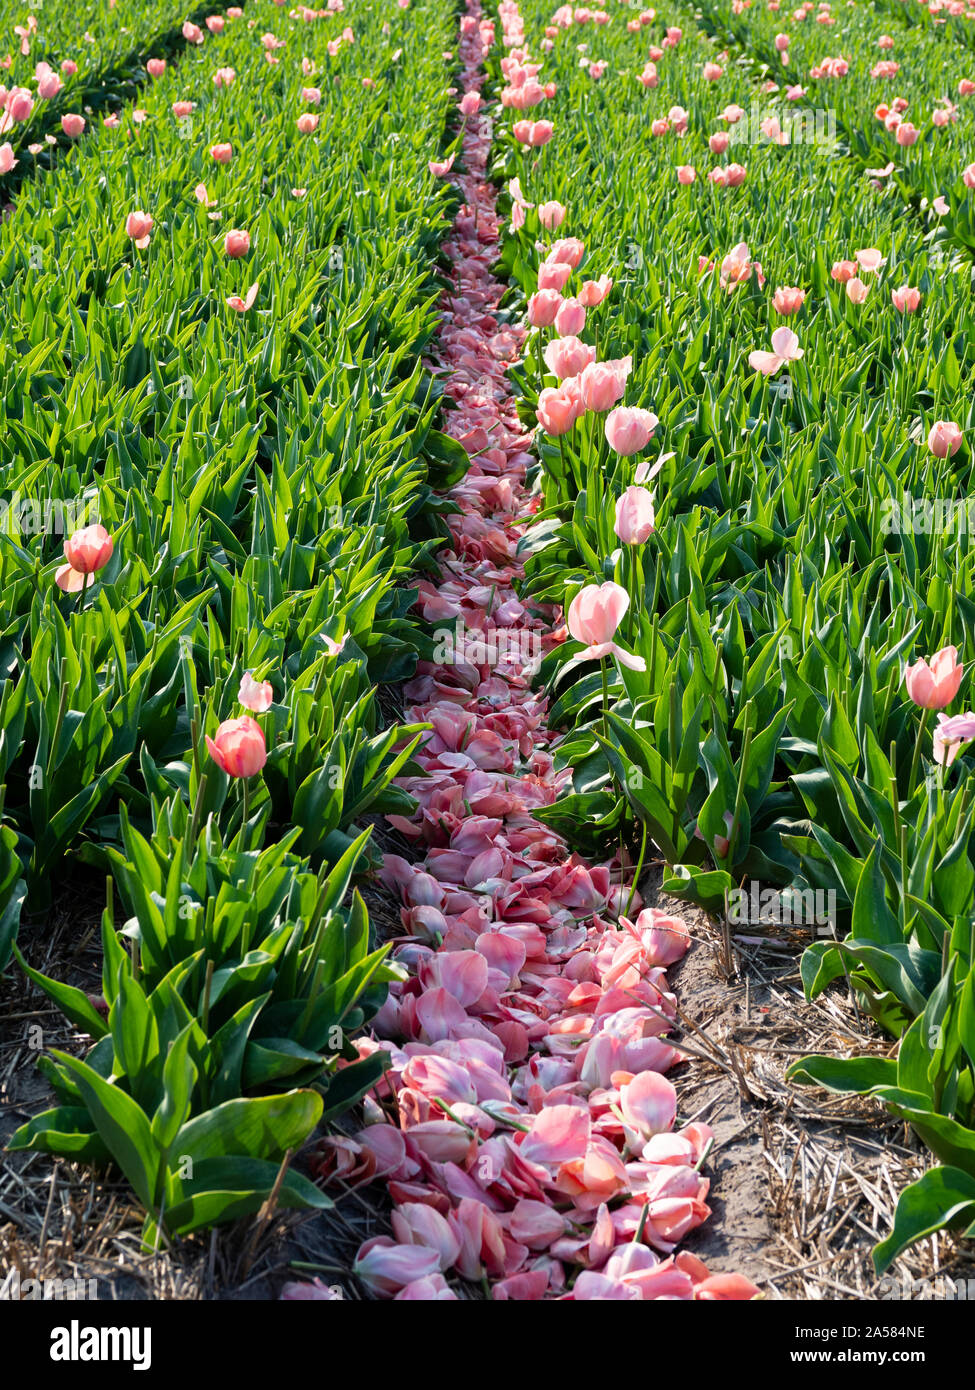 Mystic Van Eijk avec tulipes fleurs coupées dans le champ, Schagerburg, Hollande du Nord, Pays-Bas Banque D'Images